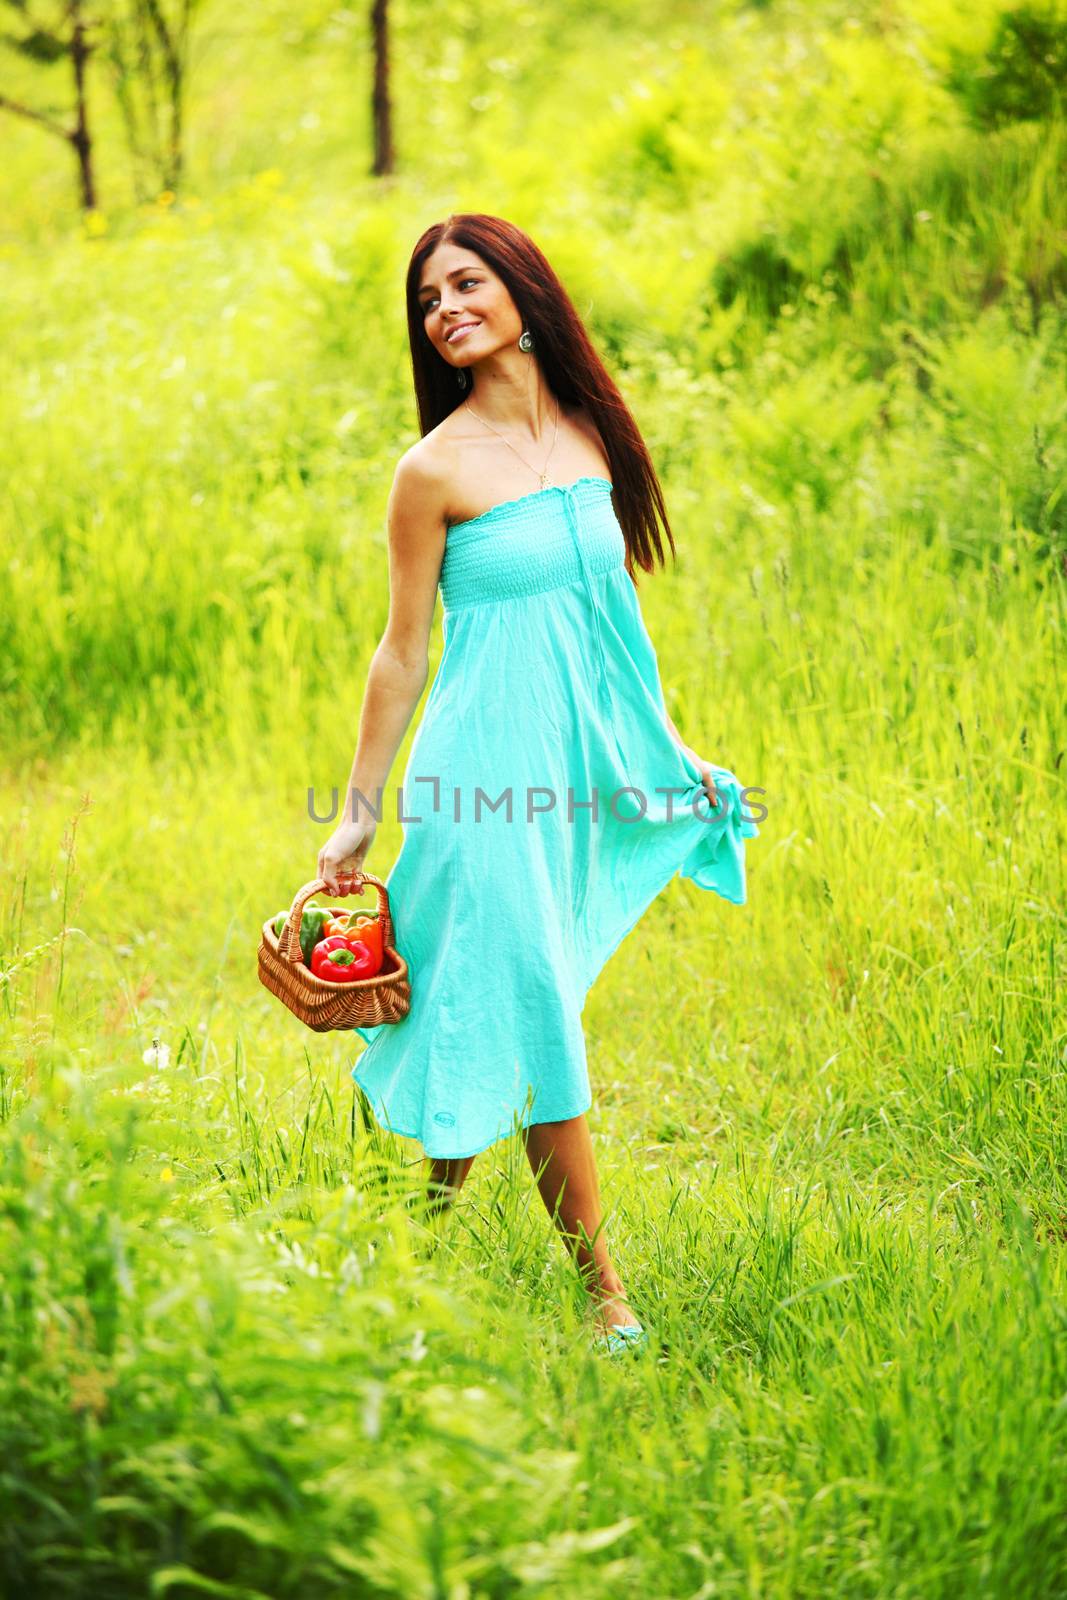 Woman walking on grass field by Yellowj